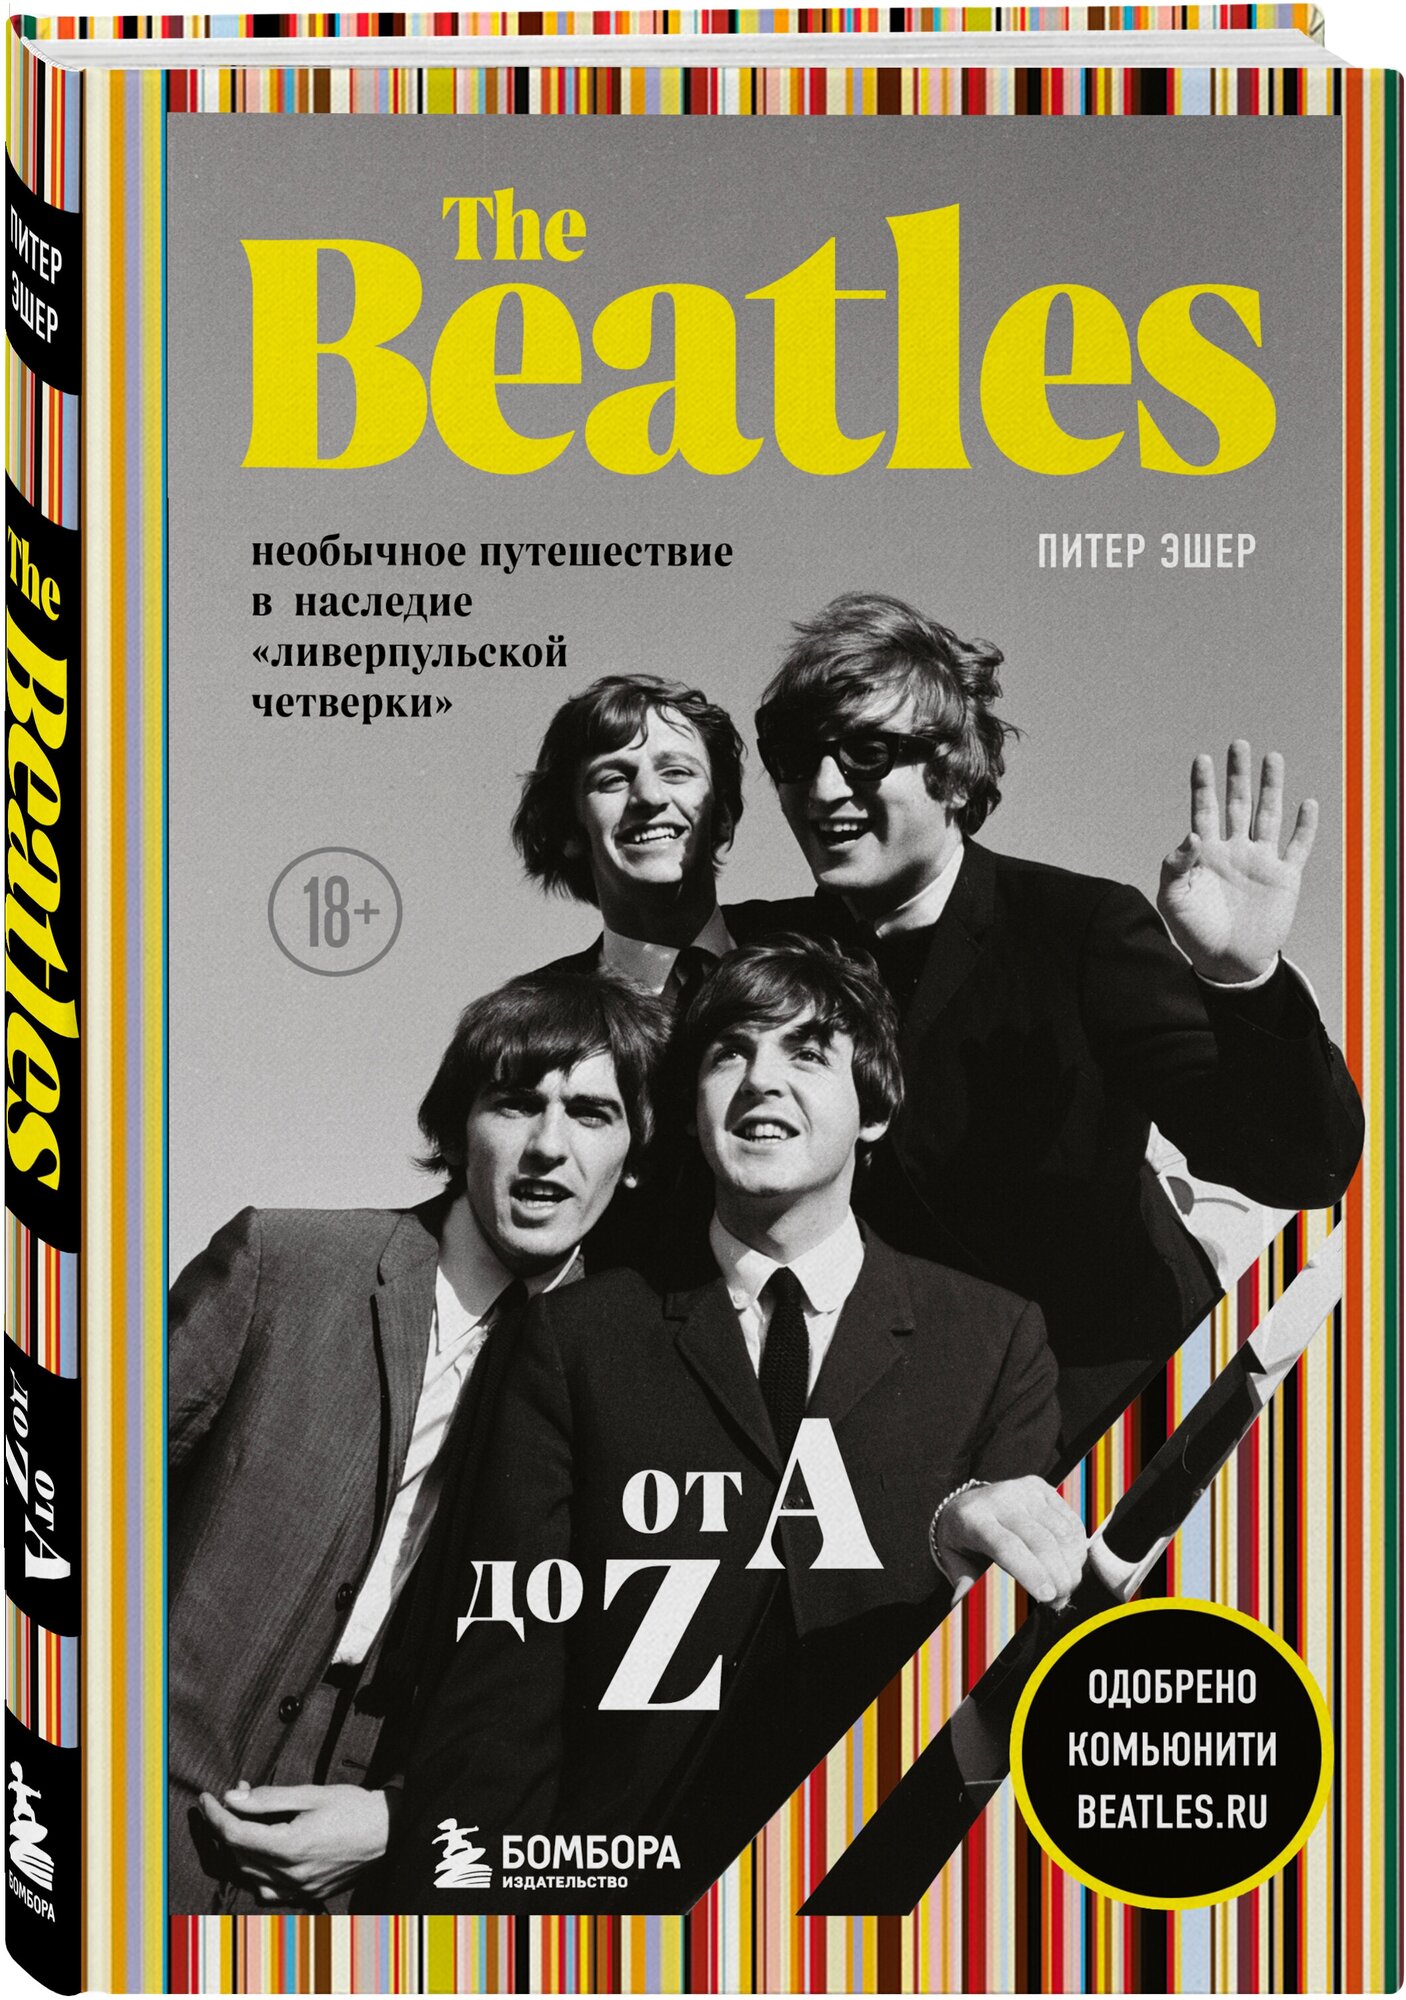 The Beatles от A до Z: необычное путешествие в наследие «ливерпульской четверки» - фото №1